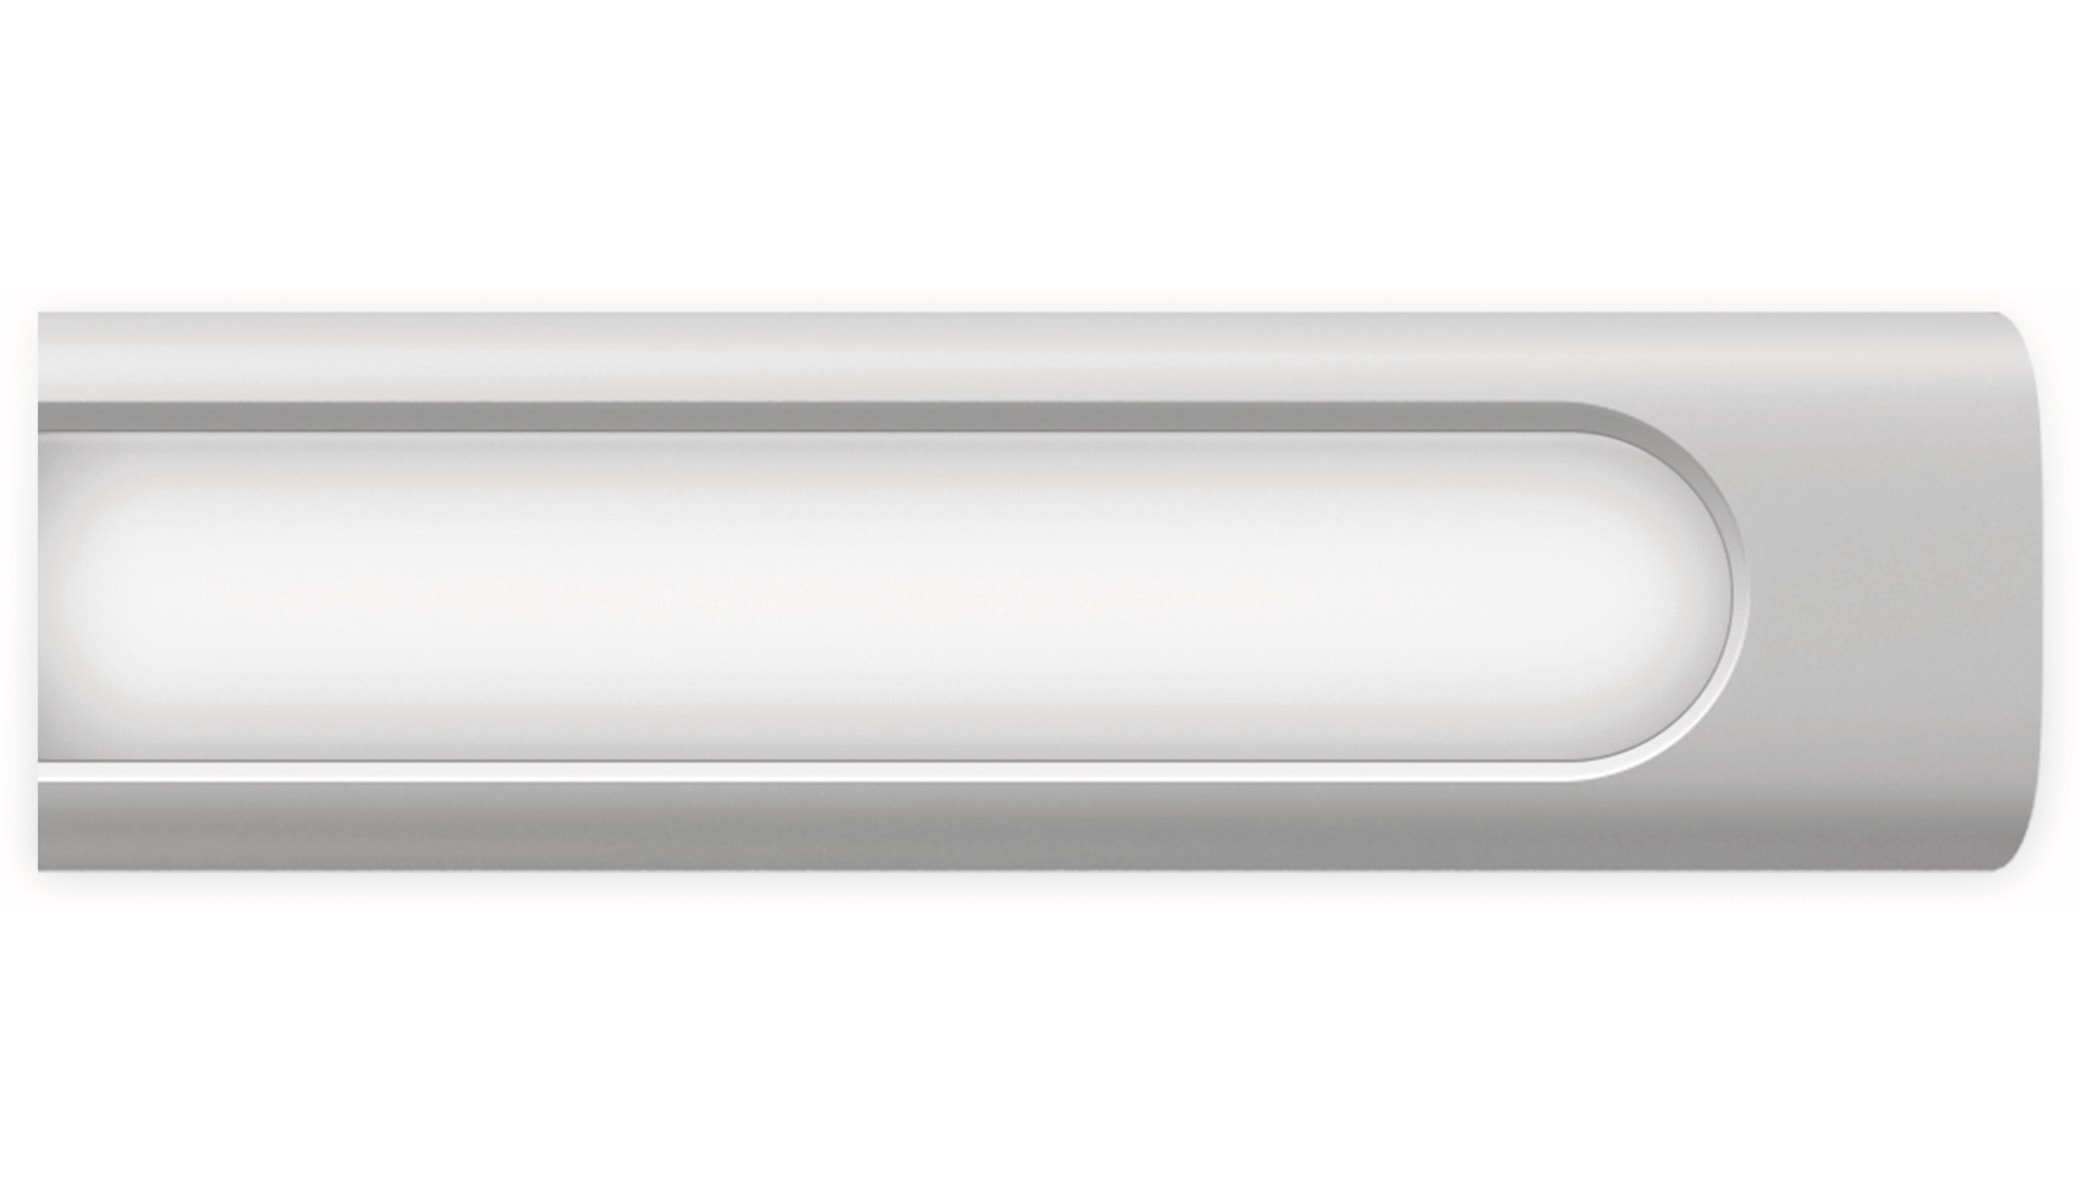 Xiaomi LED-Schreibtischleuchte Mi Smart 1S, EEK: F, 9 W, 520 lm, dimmbar, weiß